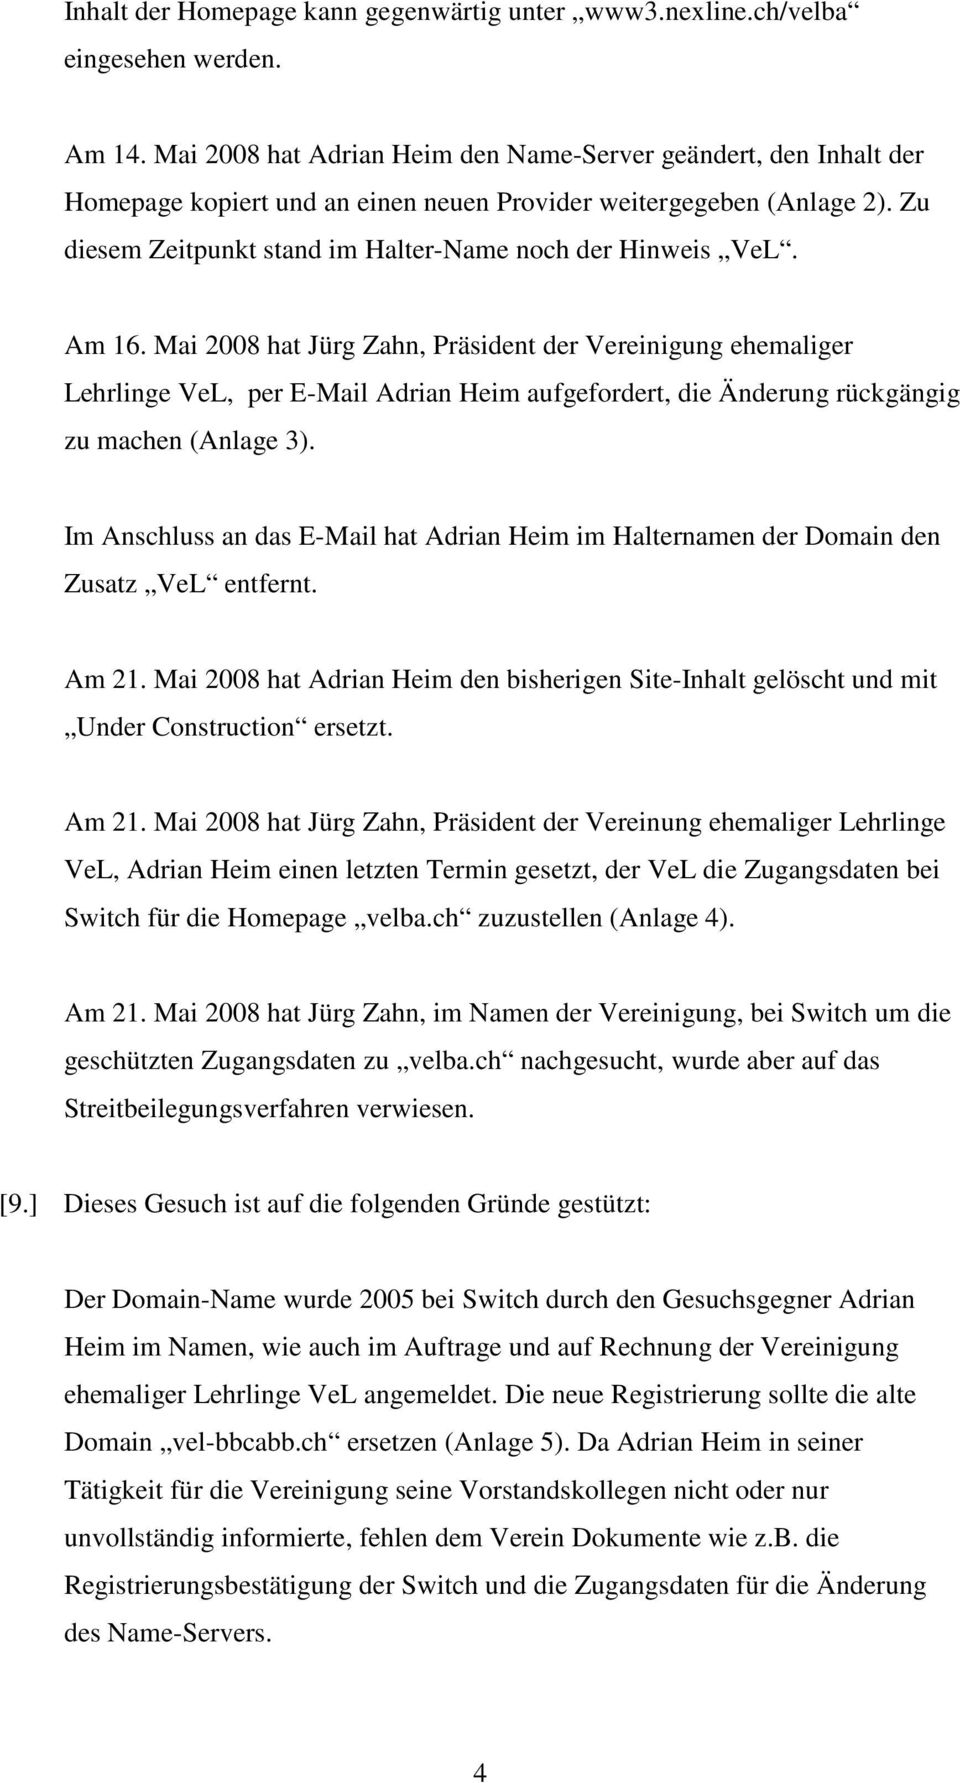 Am 16. Mai 2008 hat Jürg Zahn, Präsident der Vereinigung ehemaliger Lehrlinge VeL, per E-Mail Adrian Heim aufgefordert, die Änderung rückgängig zu machen (Anlage 3).